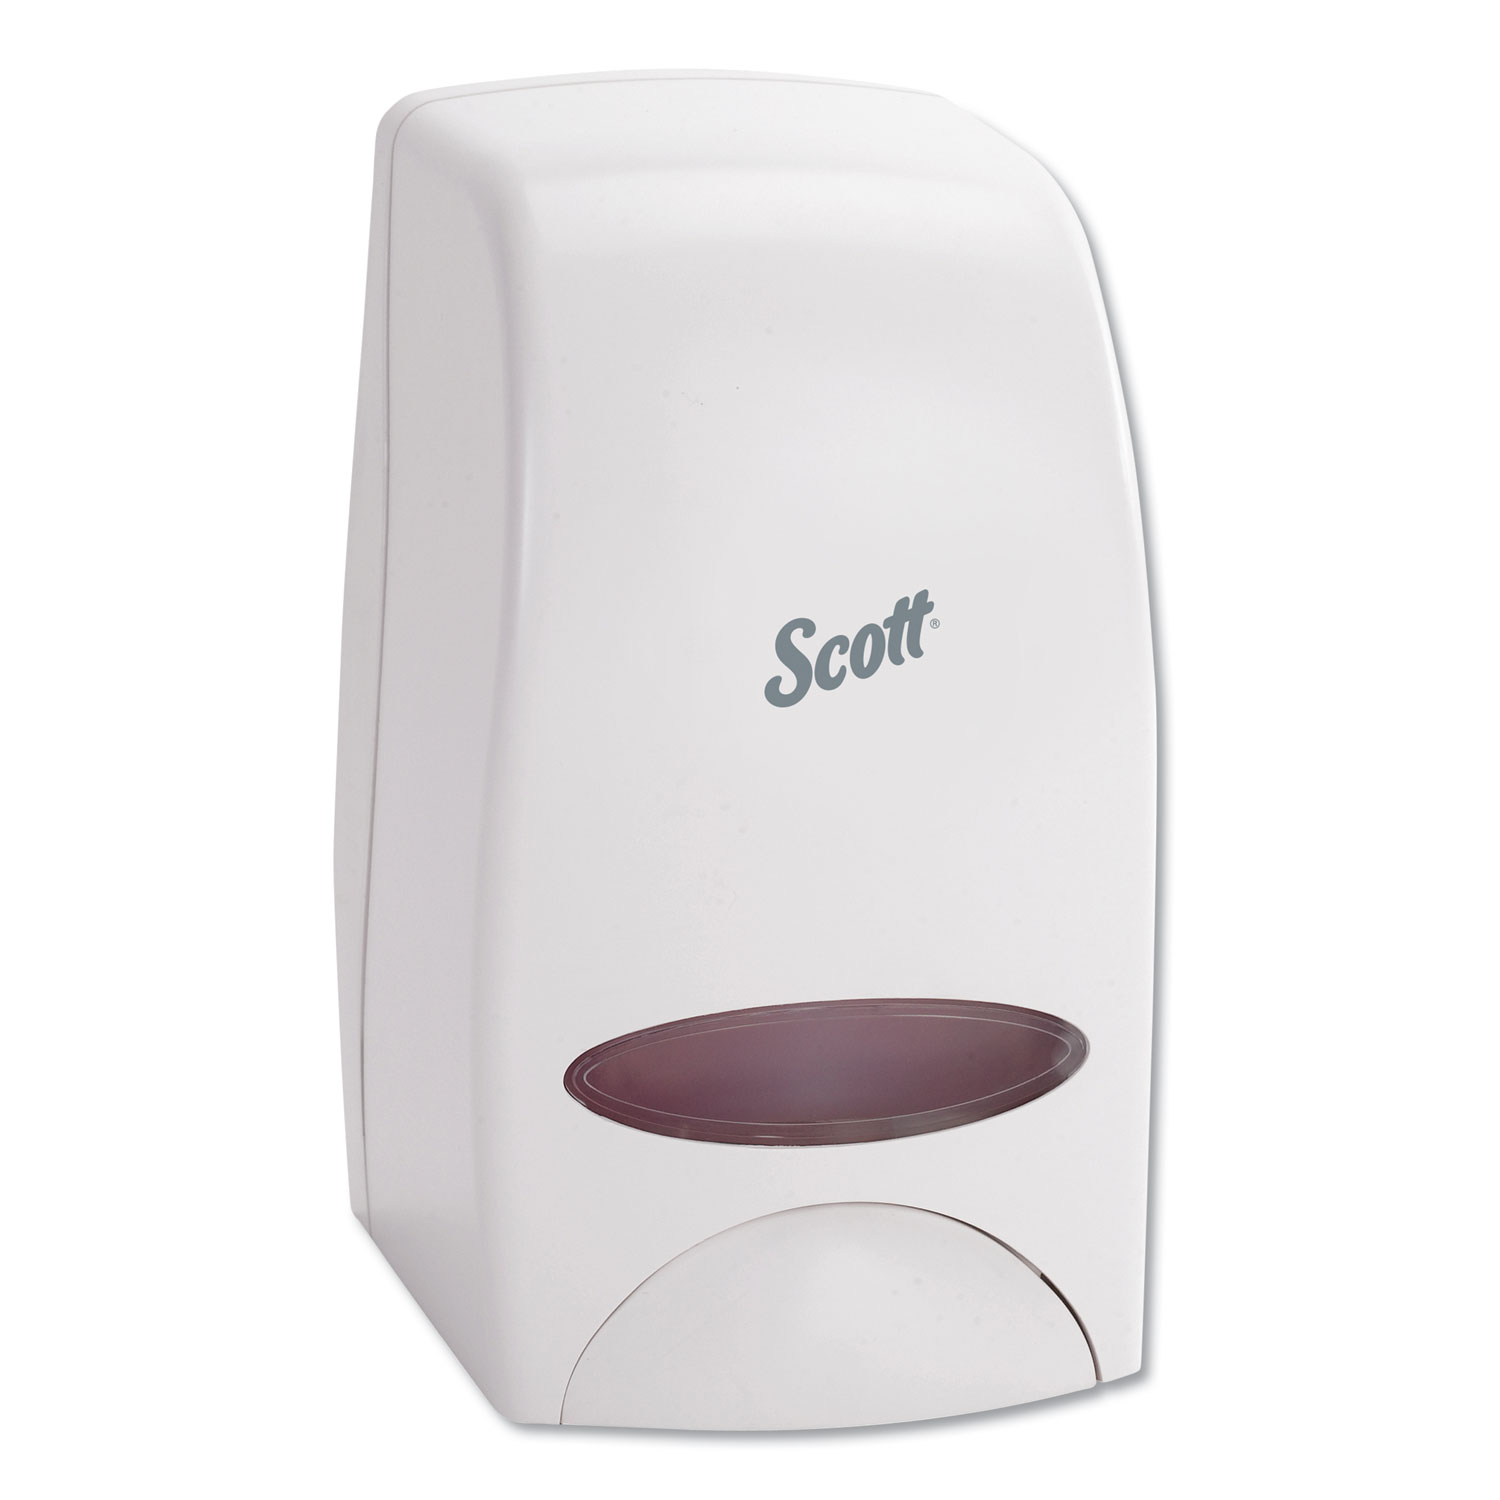  Scott 92144 Essential Manual Skin Care Dispenser, 1000 mL, 5 x 5.25 x 8.38, White (KCC92144) 